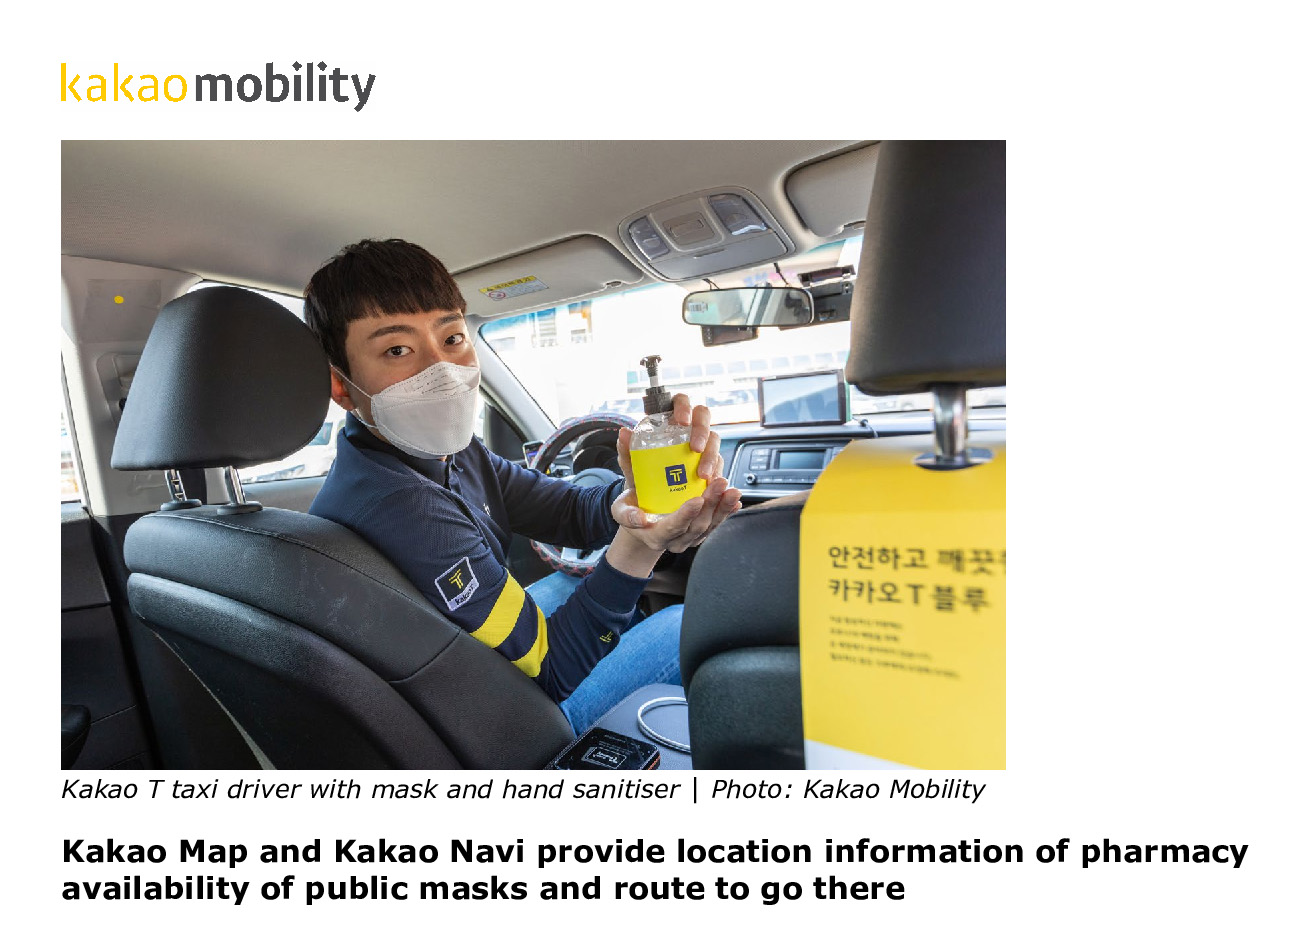 L'OCDE salue la réponse de l'aéroport international d'Incheon et de Kakao Mobility face au Covid-19